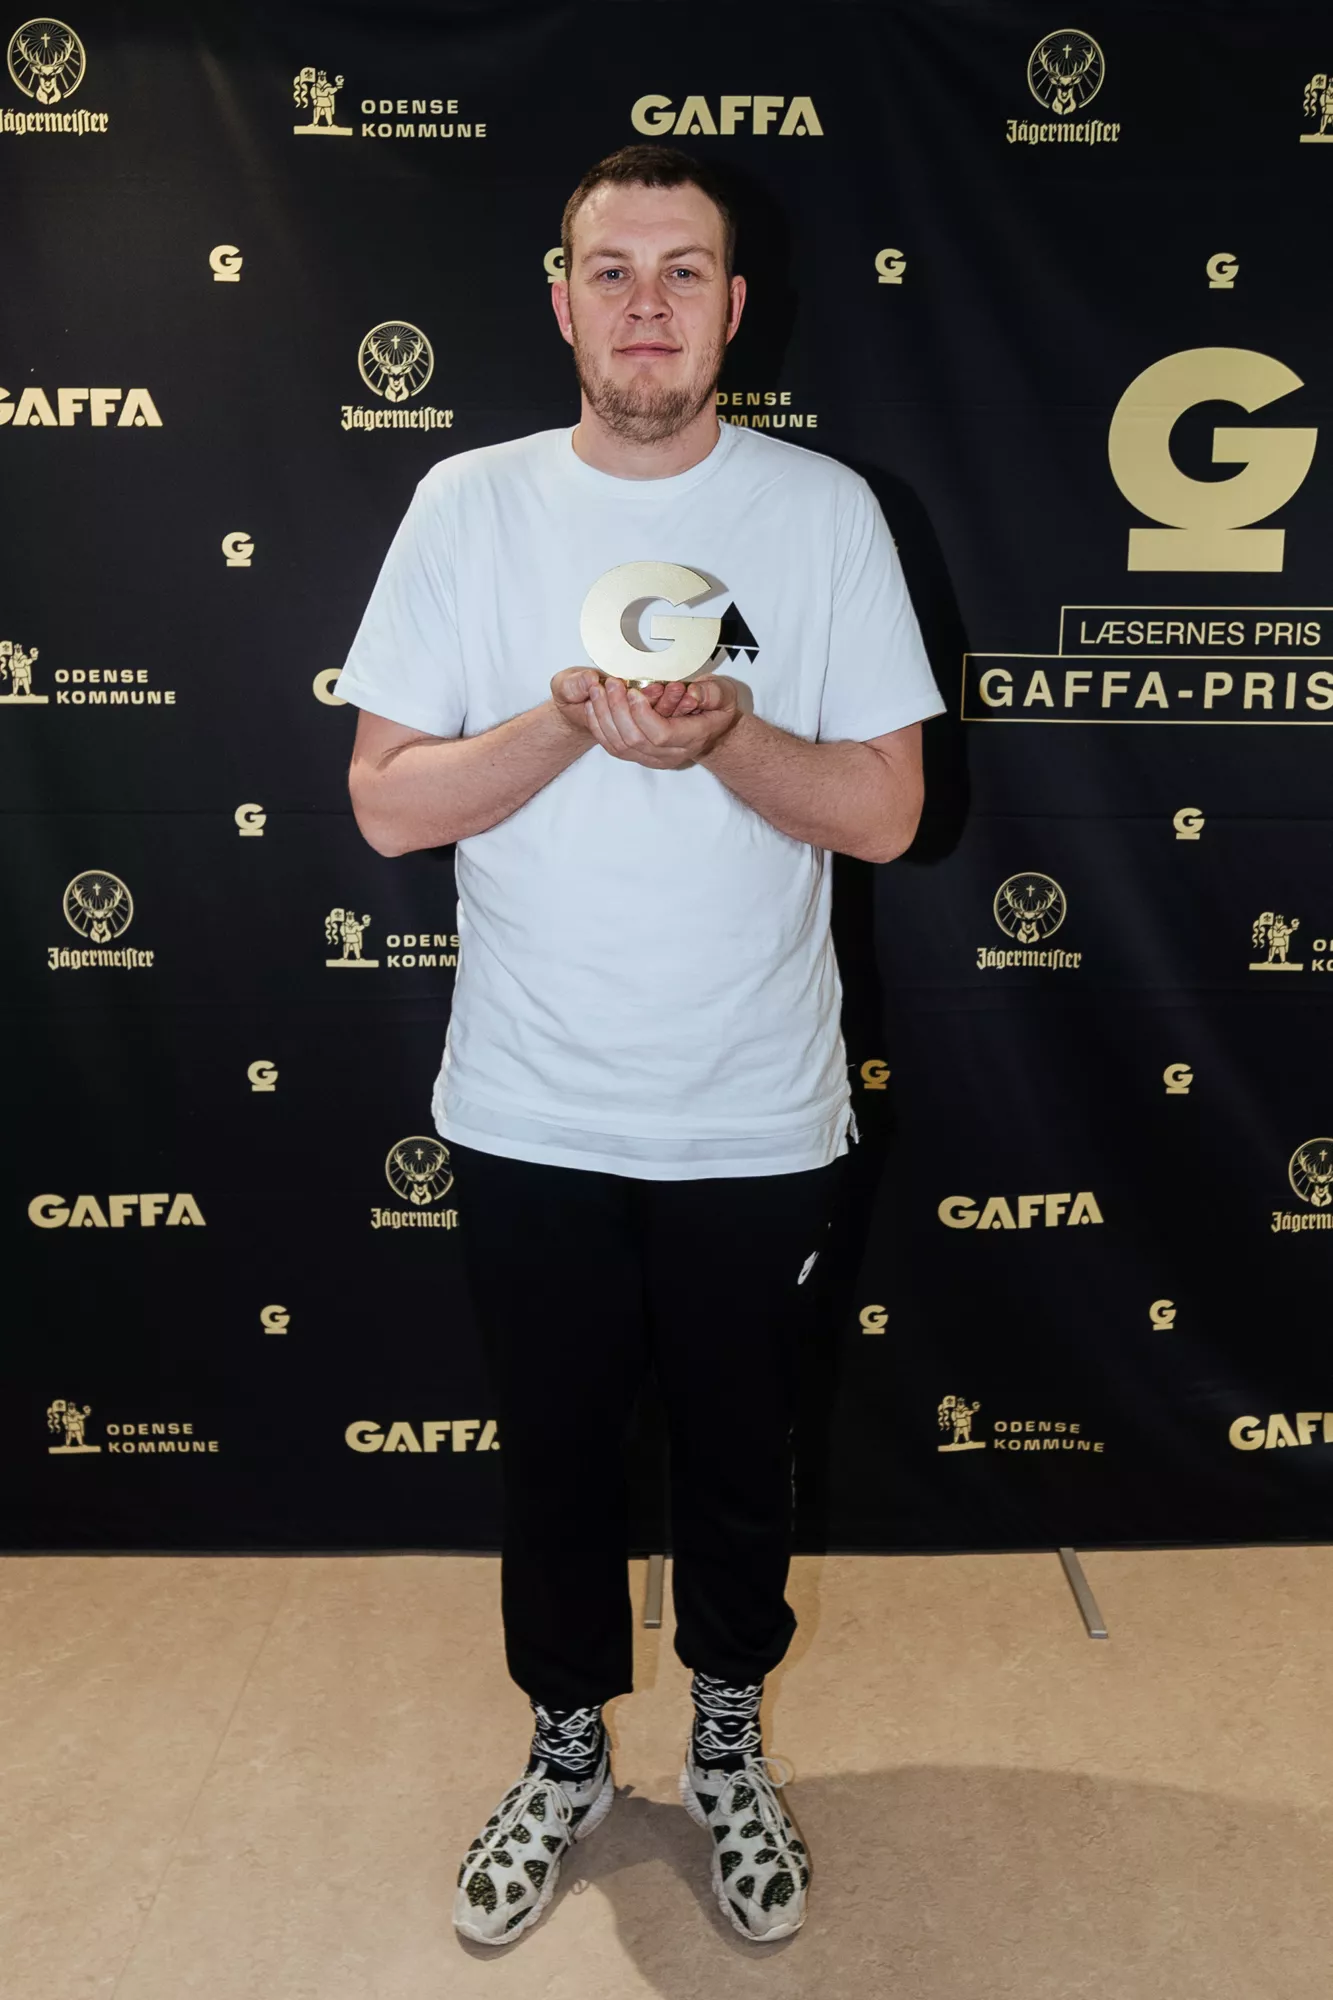 GAFFA-Pris-vinderne AV AV AV: – 2018 er allerede et stort år for os